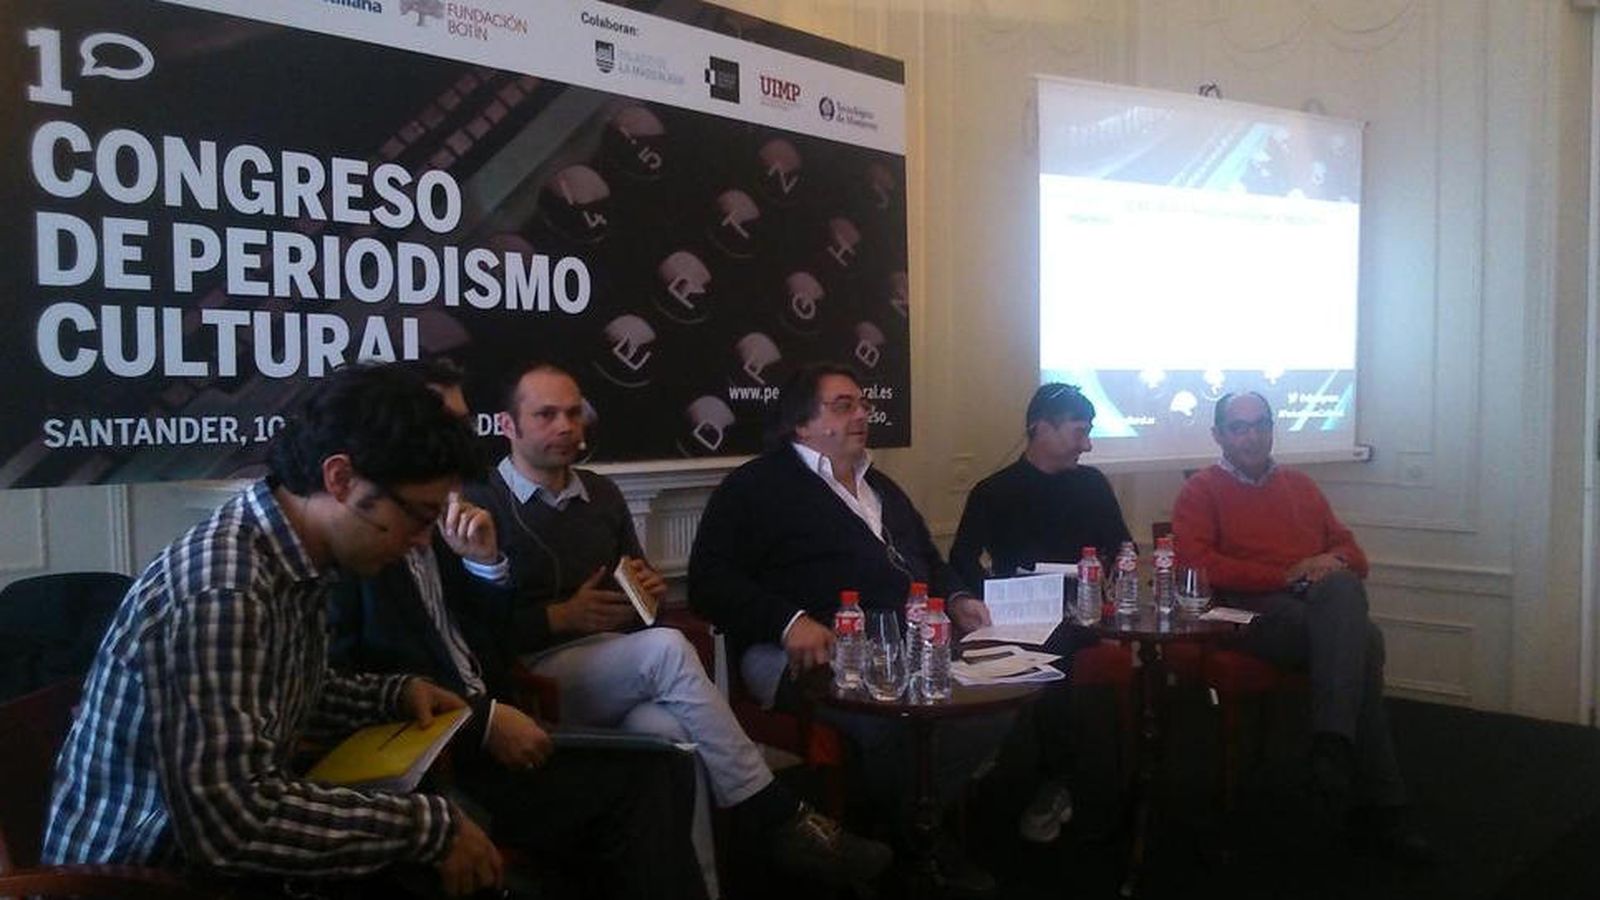 Foto: I Congreso de Periodismo Cultural